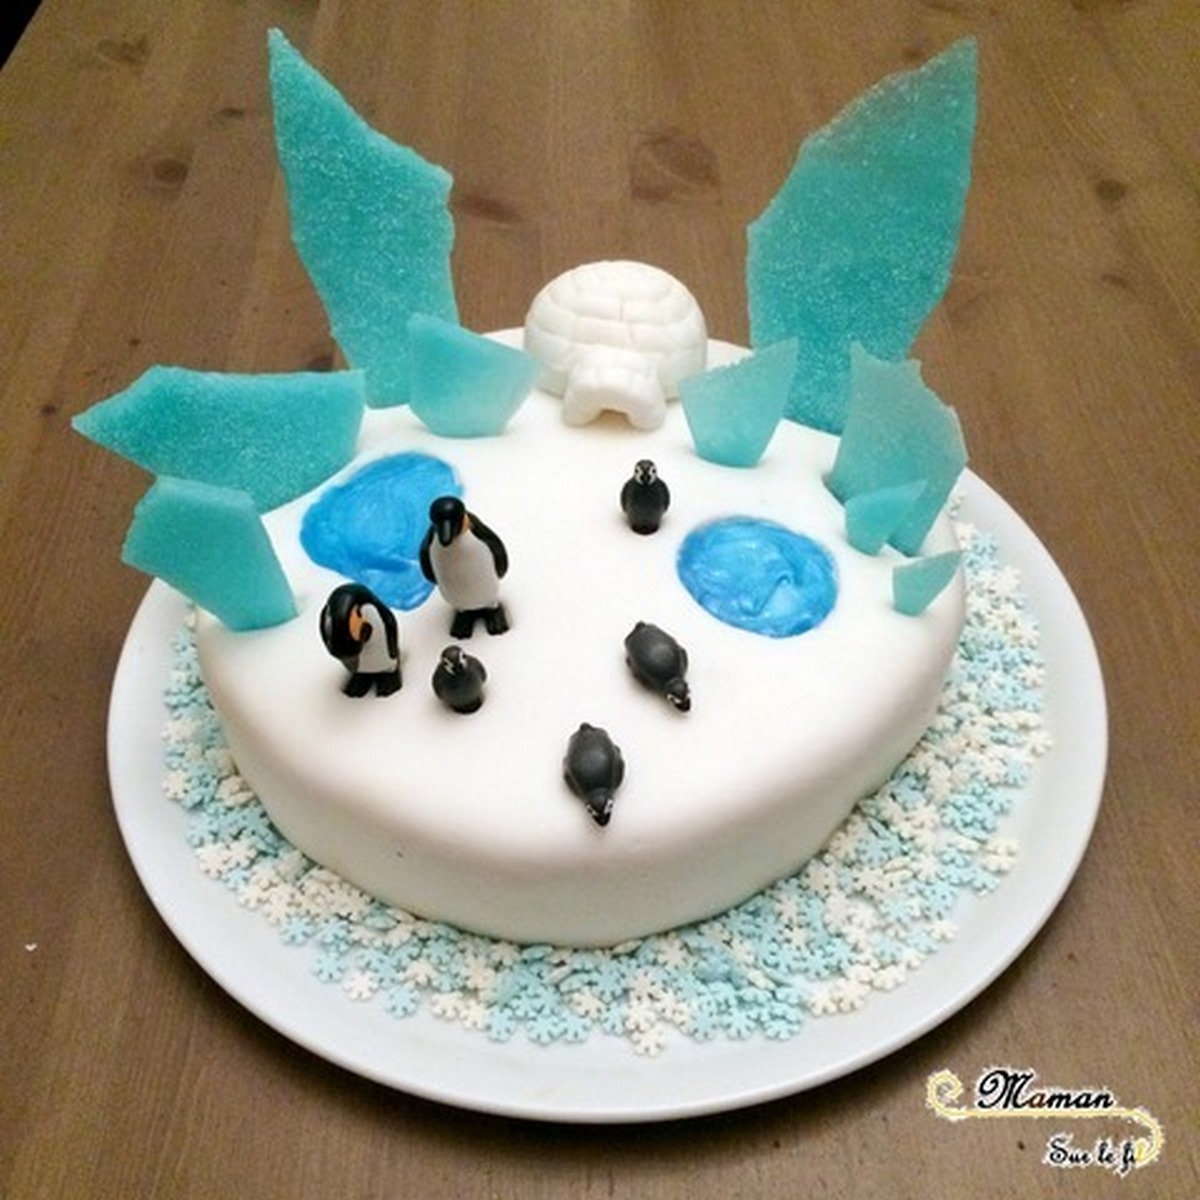 Idée gâteau anniversaire enfant - banquise et pingouins - Glace, neige, gel alimentaire, igloo en pâte à sucre - mslf